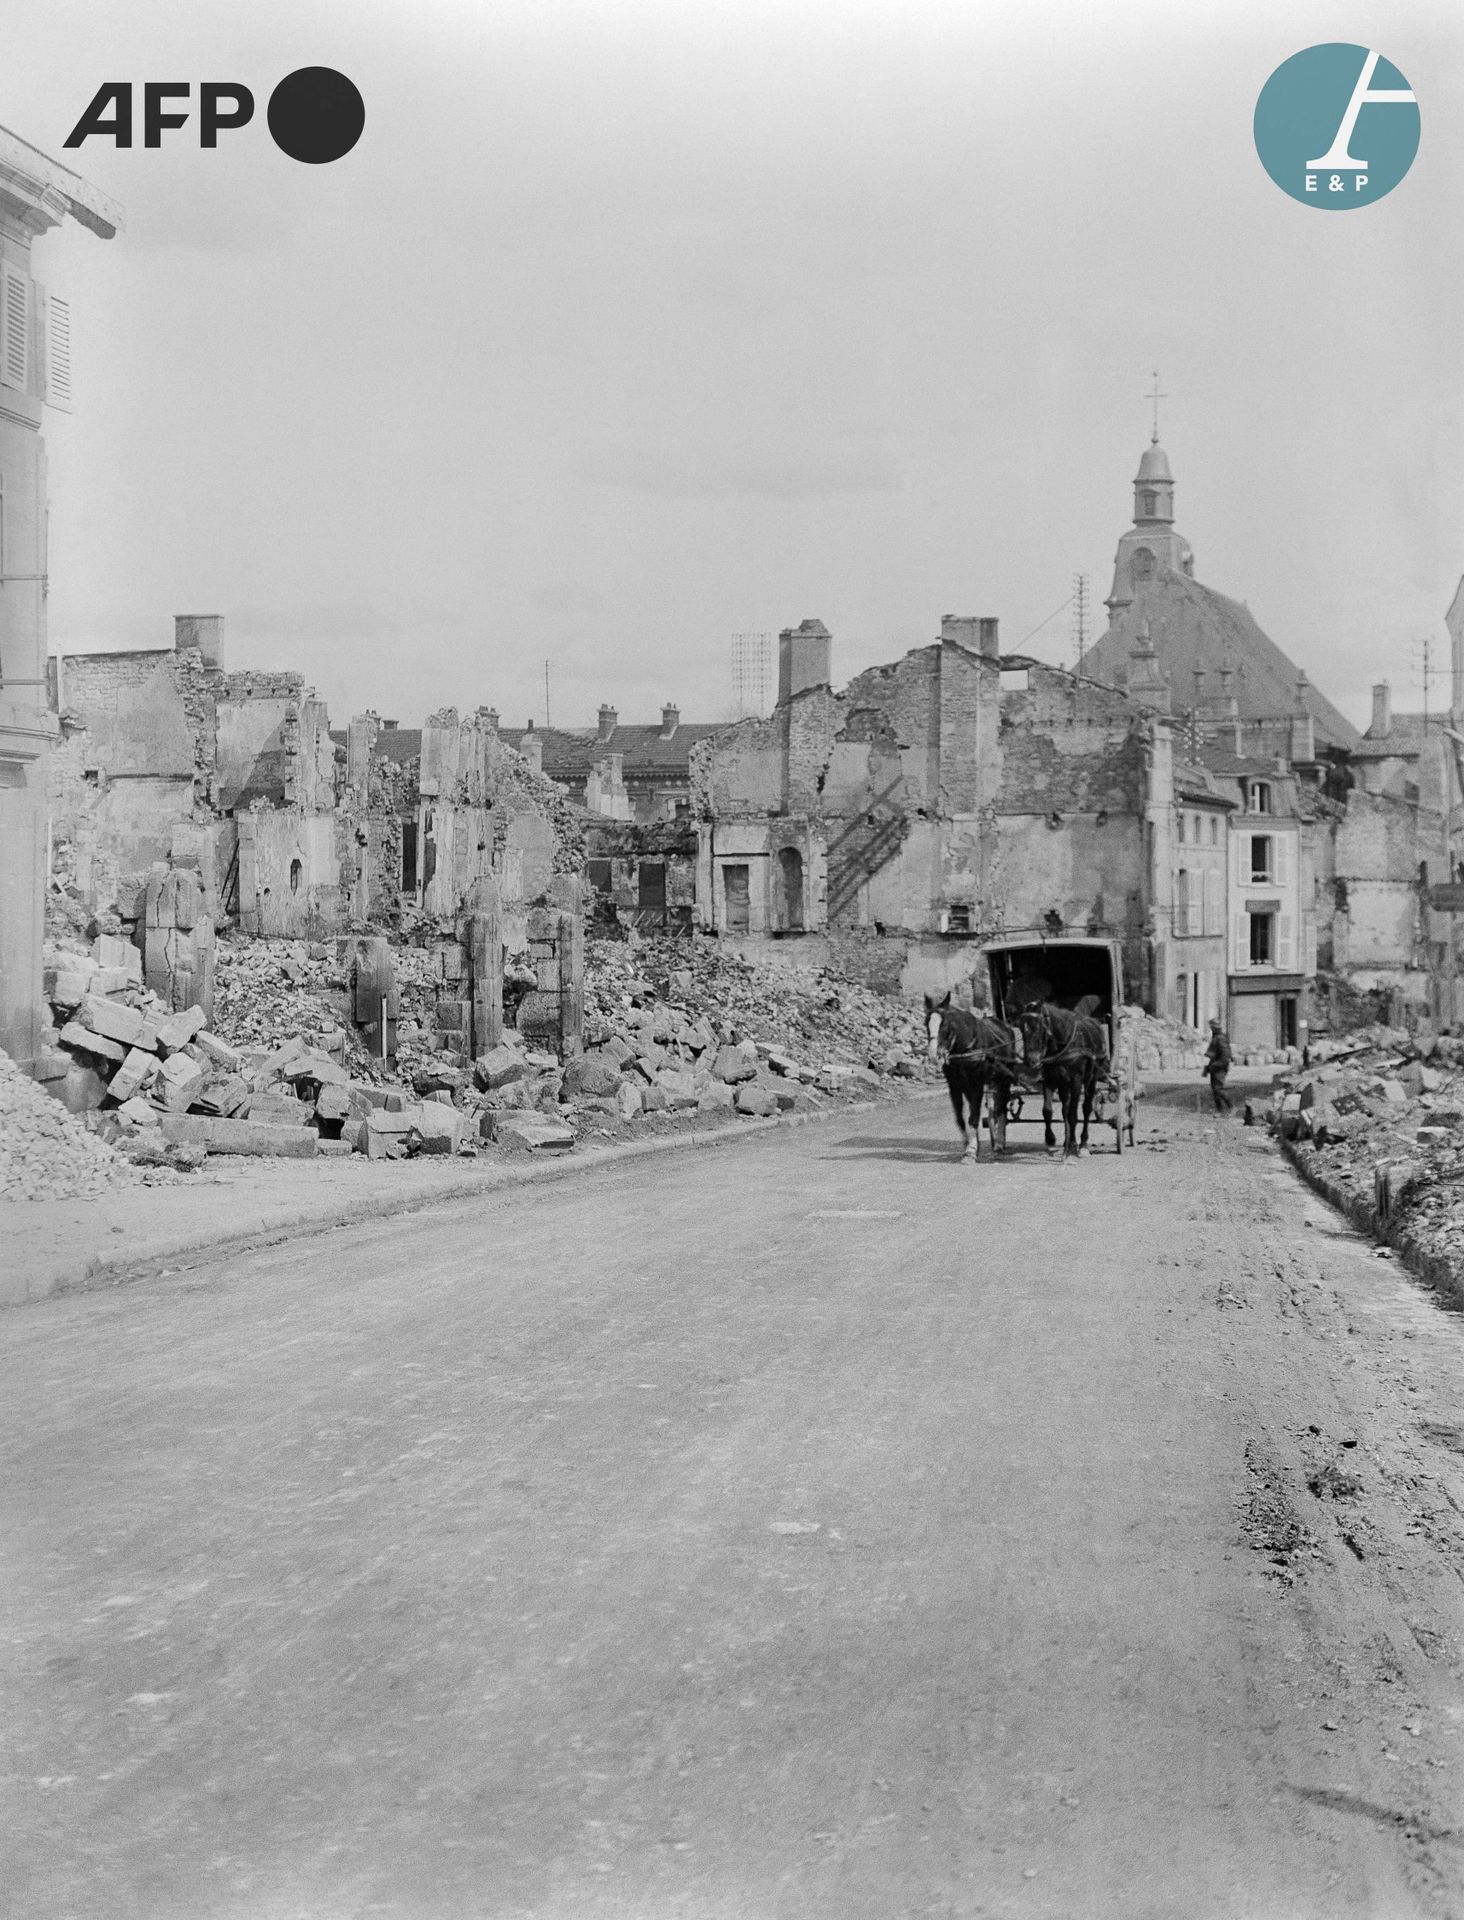 Null AFP

Die zerstörte Stadt Verdun, fotografiert von einem Soldaten. Erster We&hellip;